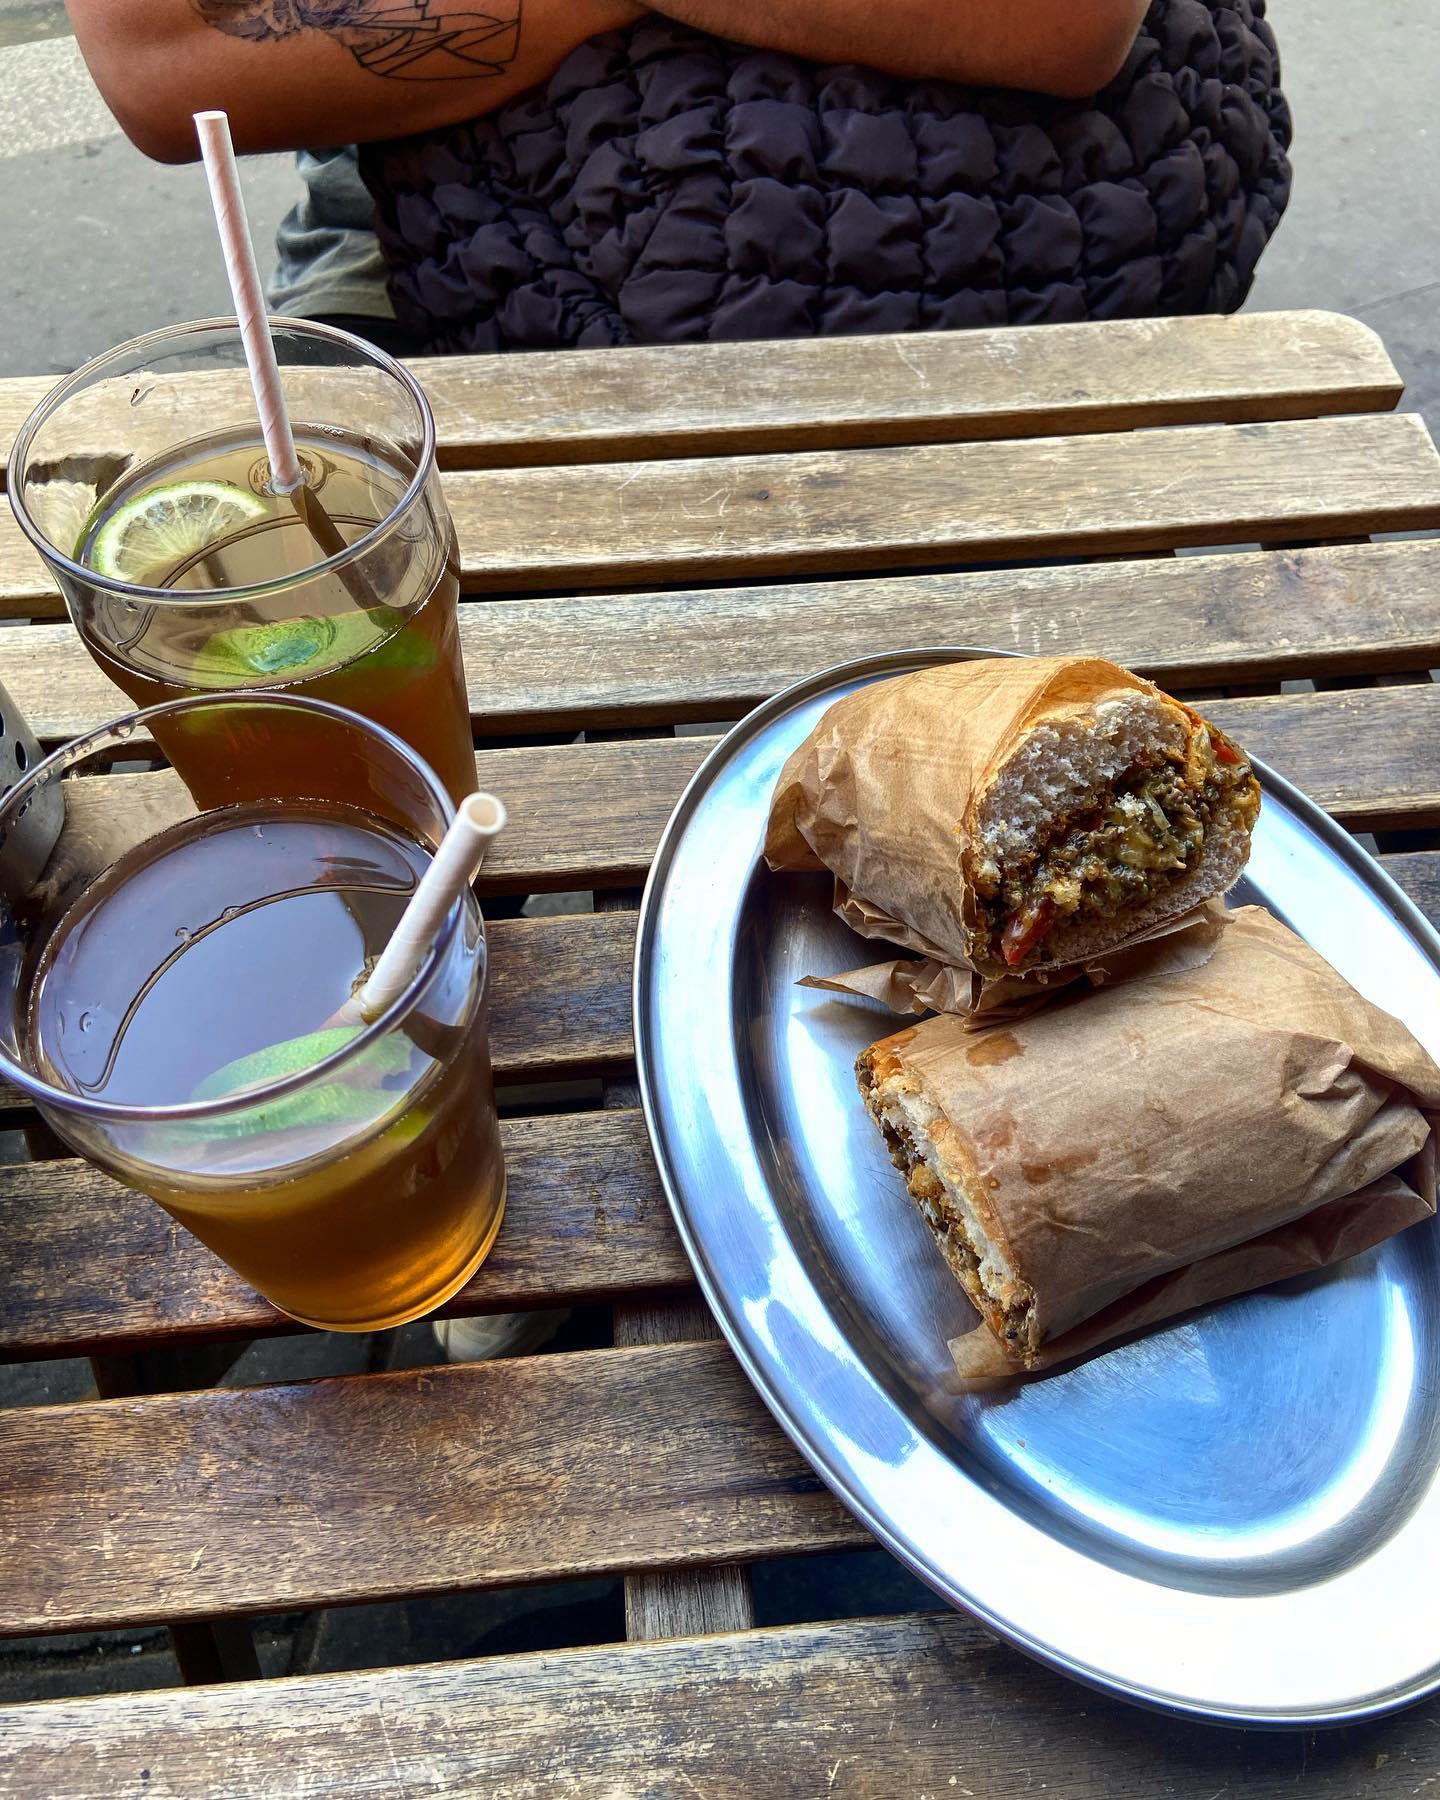 Paris Food Guide - Toujours une bonne adresse pour manger entre le sandwich chaud et la pizza pepper